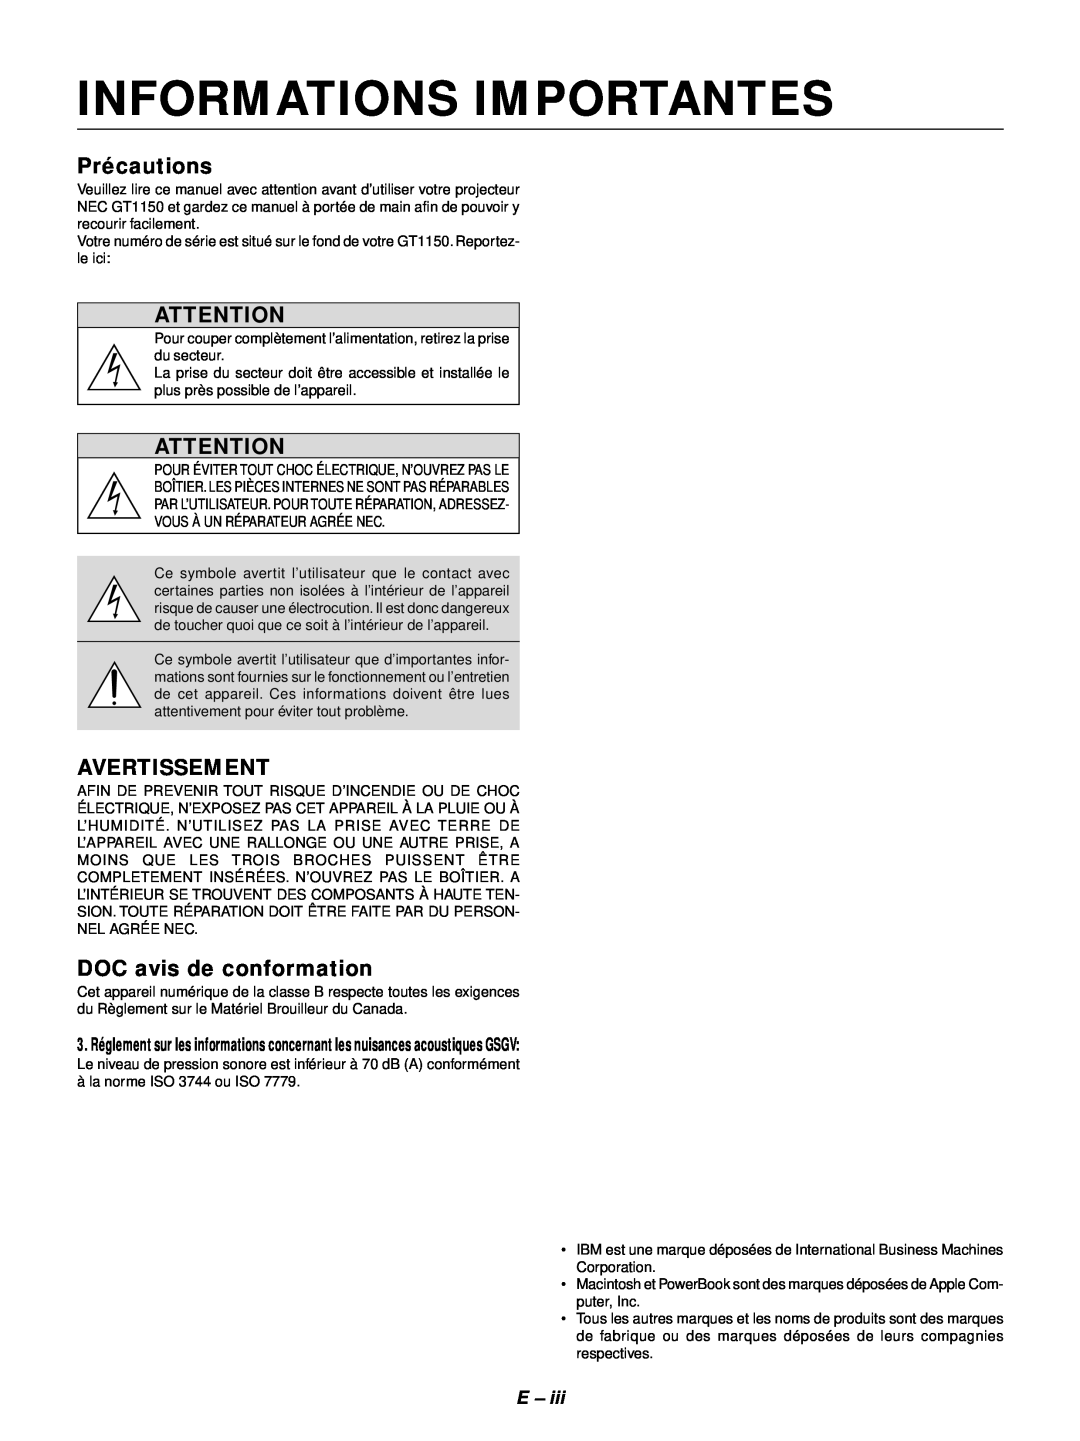 NEC GT1150 user manual Informations Importantes, Précautions, Avertissement, DOC avis de conformation 